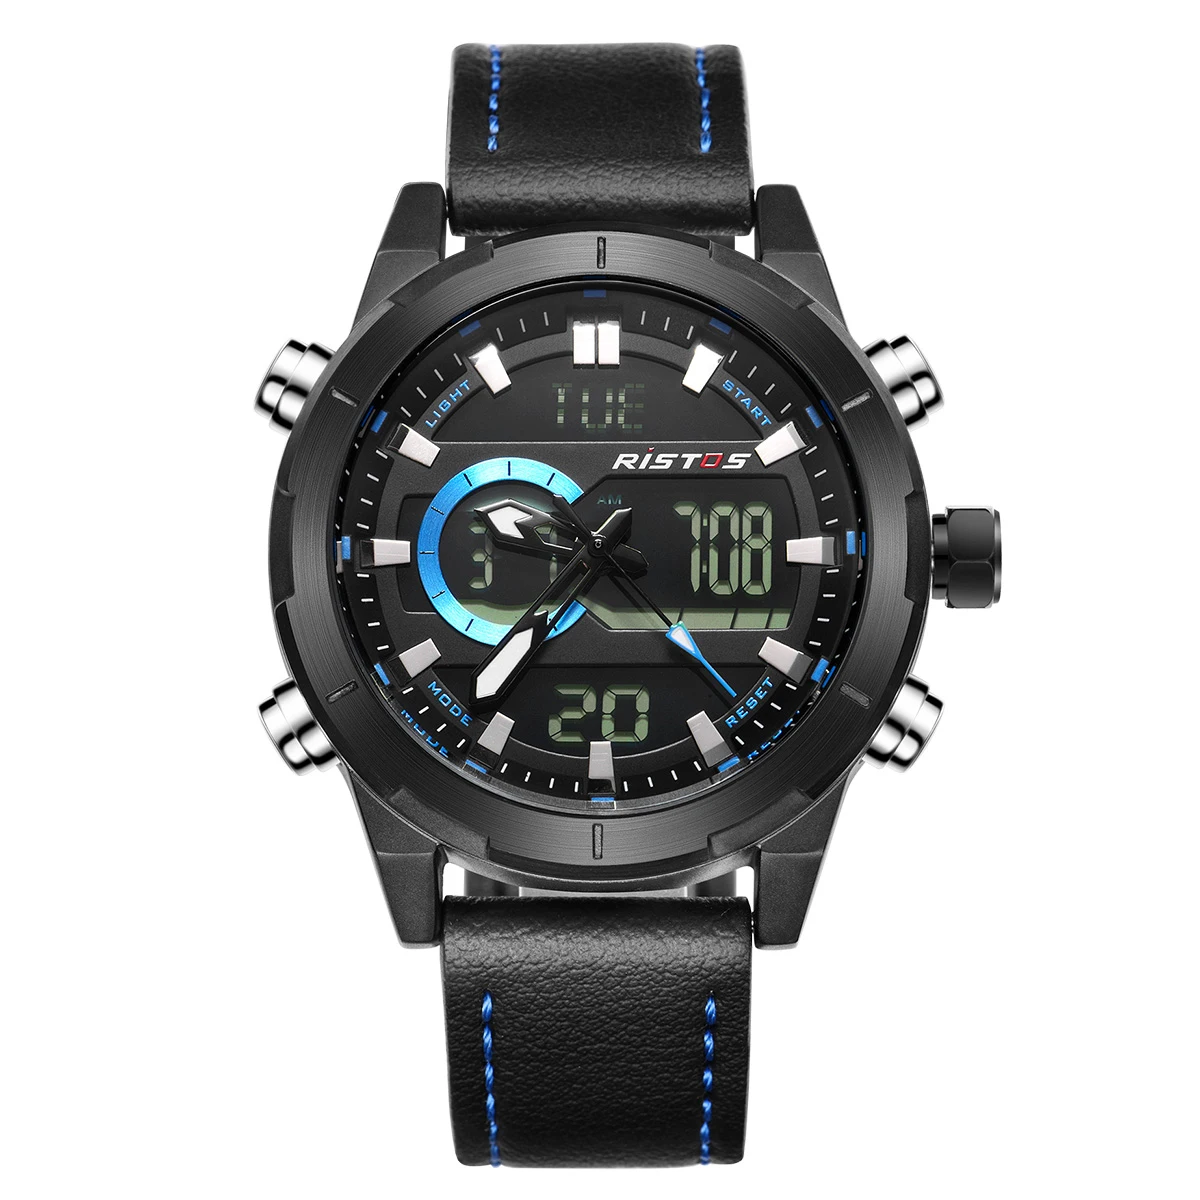 RISTOS кожаные часы Топ бренд Relojes Masculino Hombre многофункциональный хронограф мужские спортивные аналоговые цифровые модные часы 9342